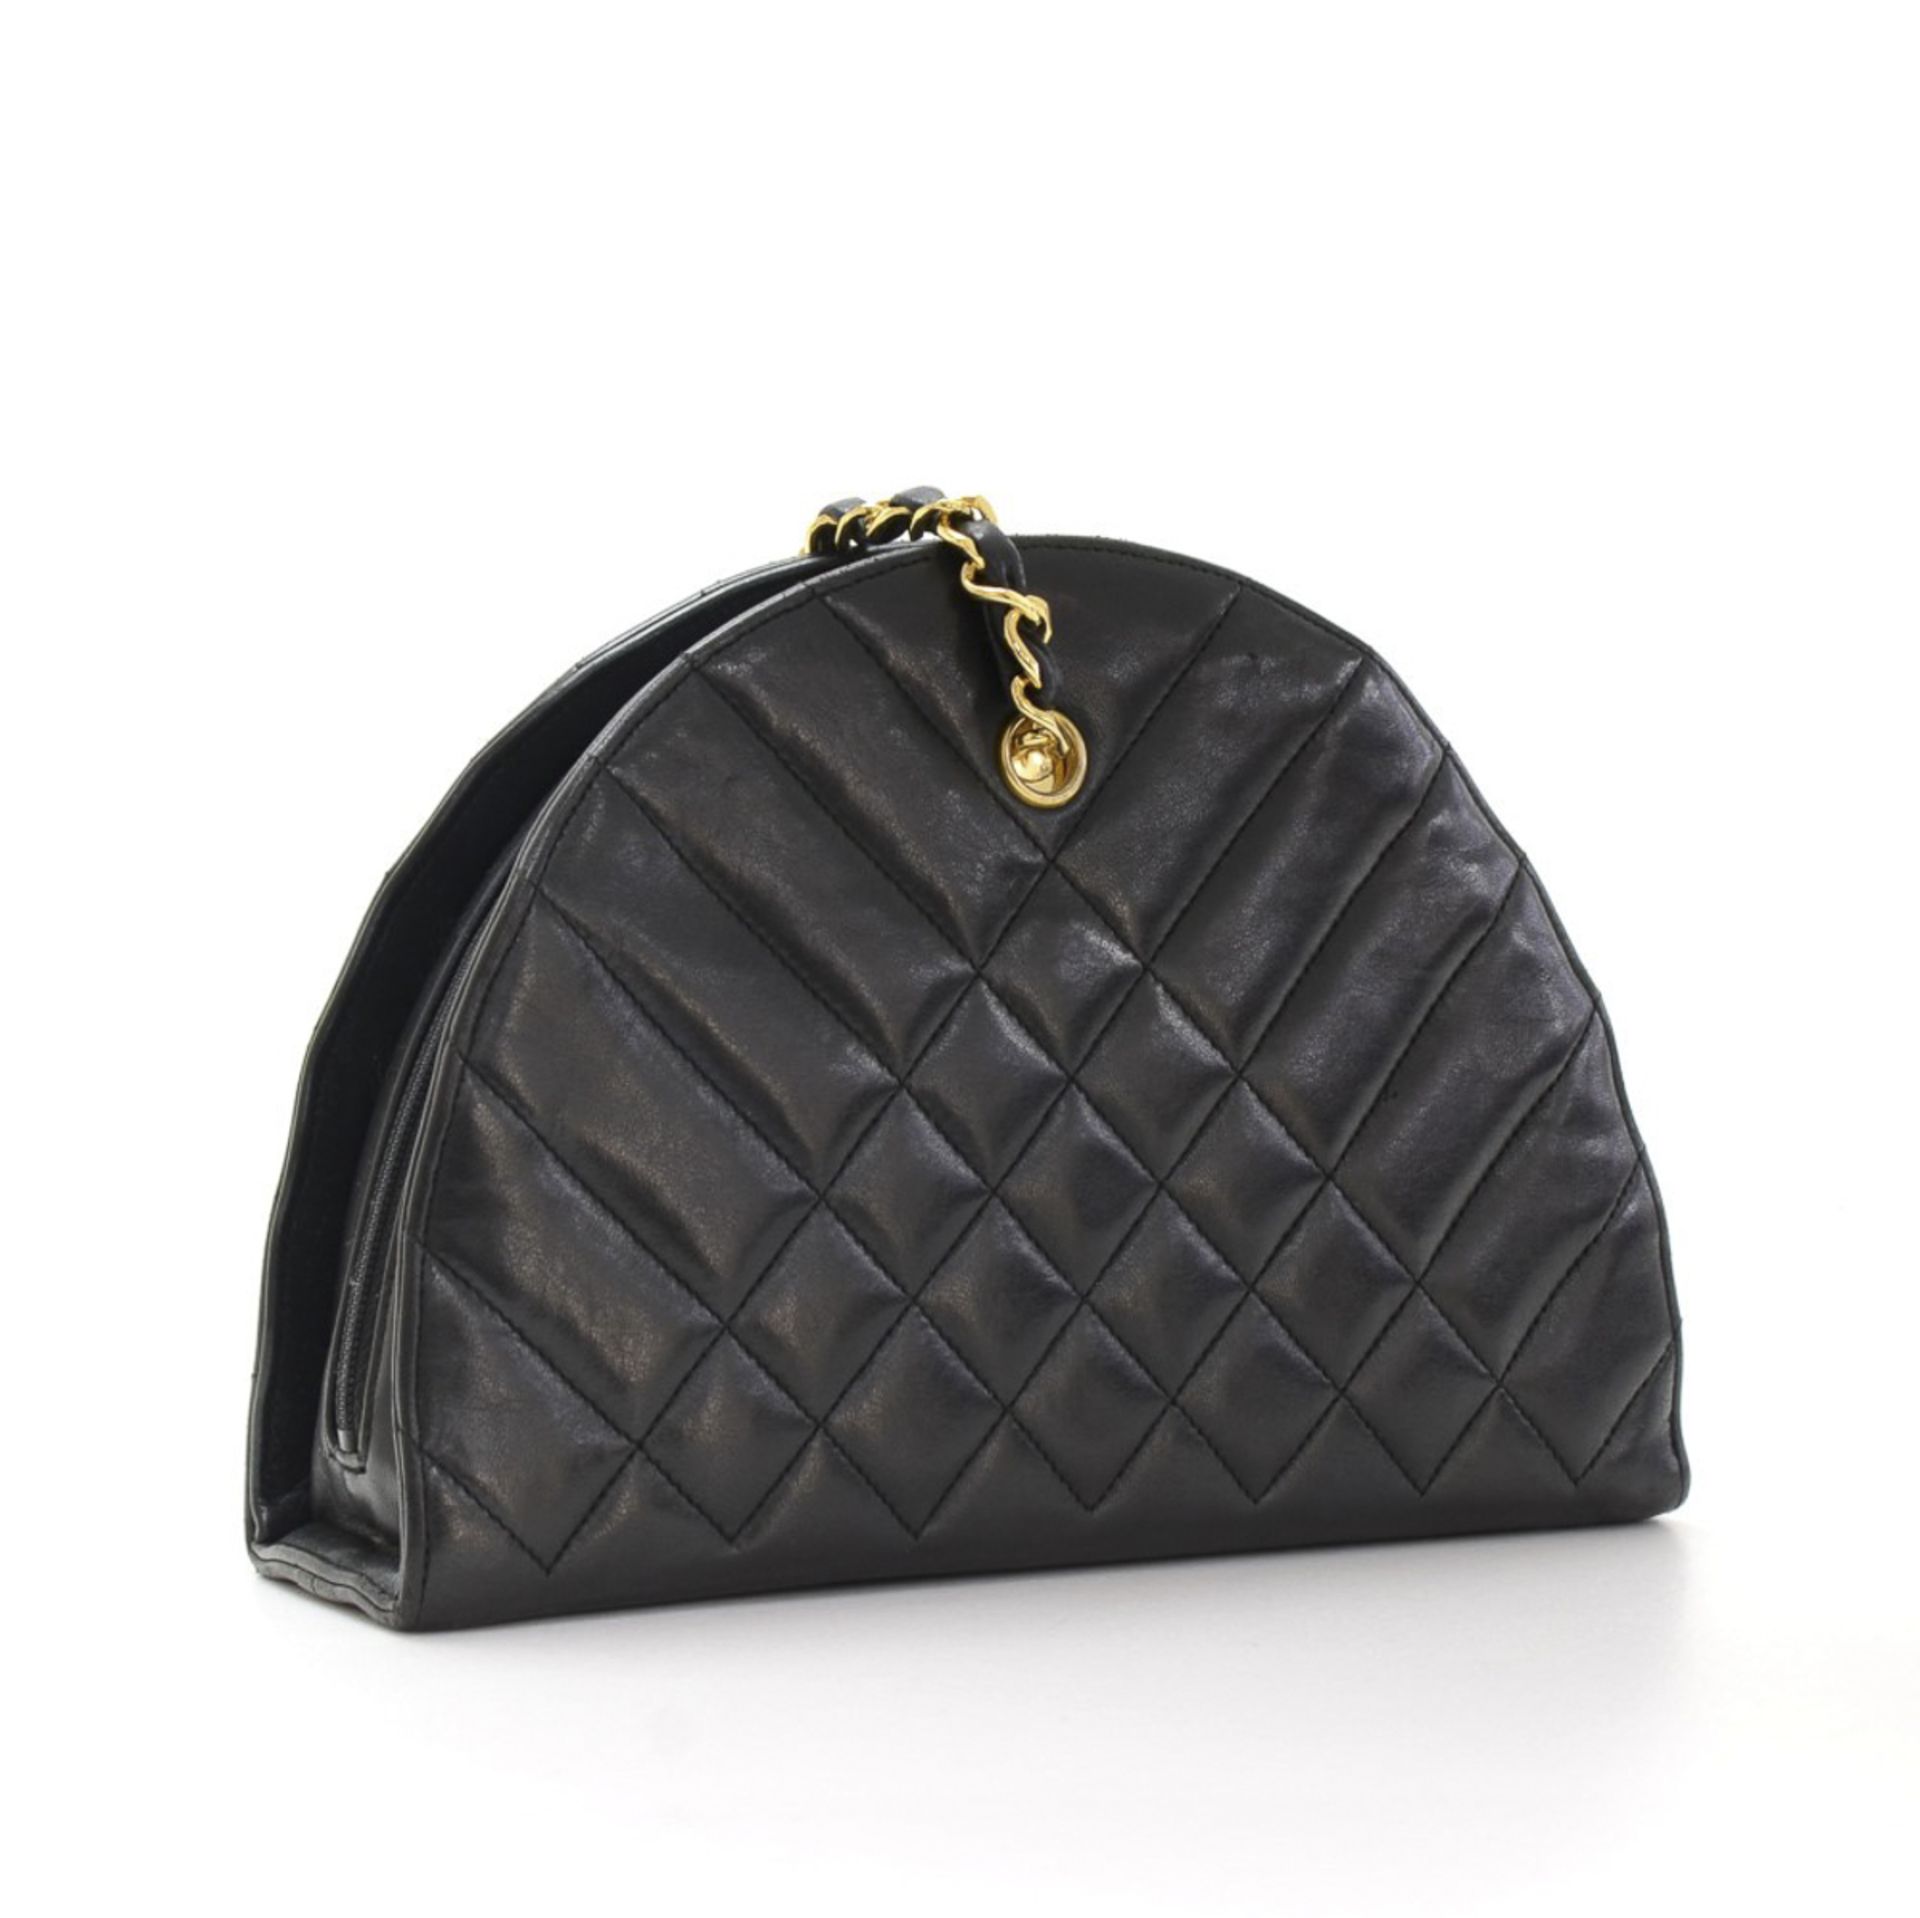 Chanel, Timeless Shoulder Bag - Image 2 of 11